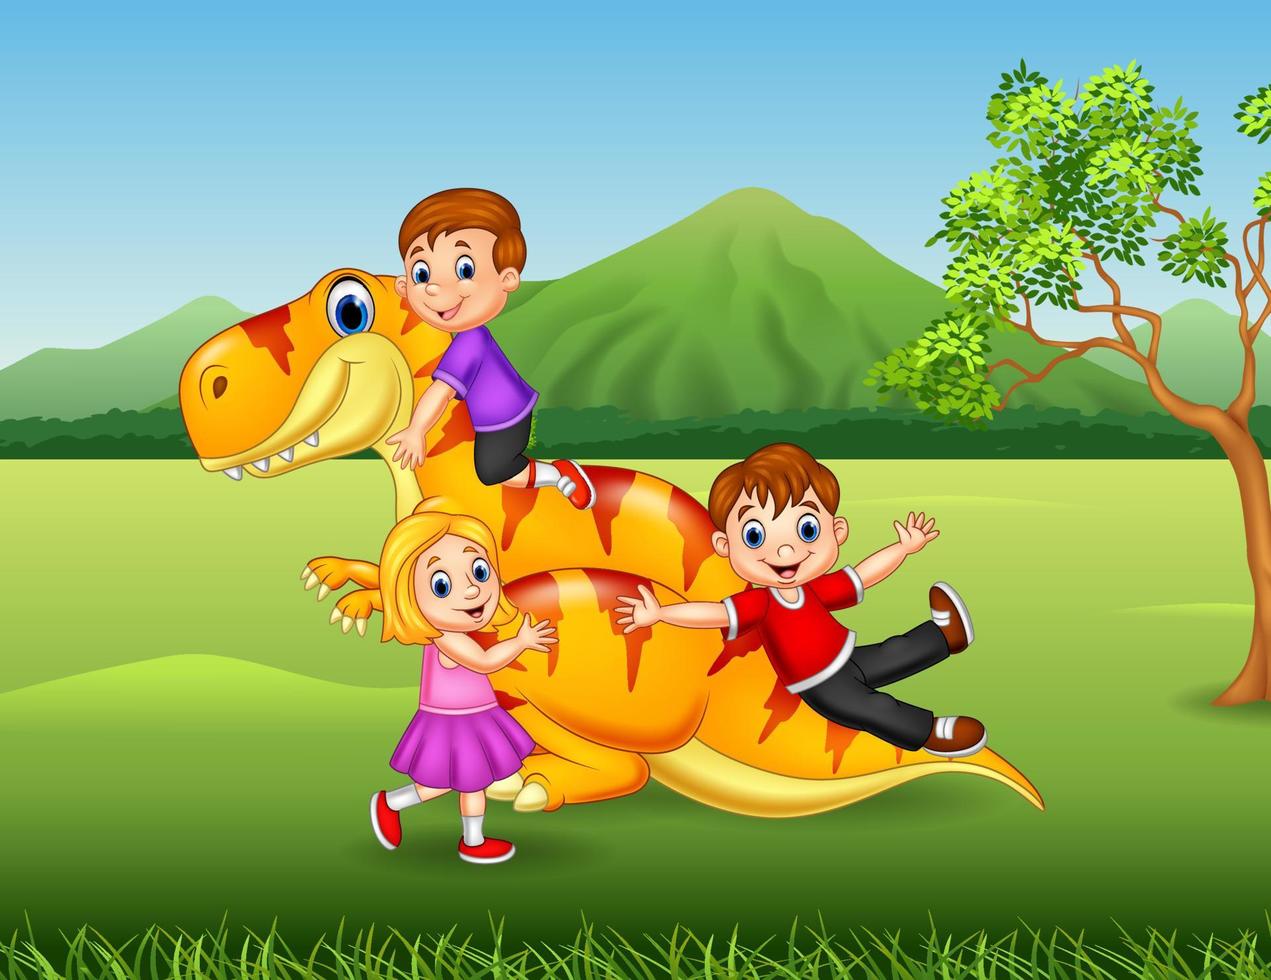 tecknad liten unge leker med en dinosaurie i djungeln vektor